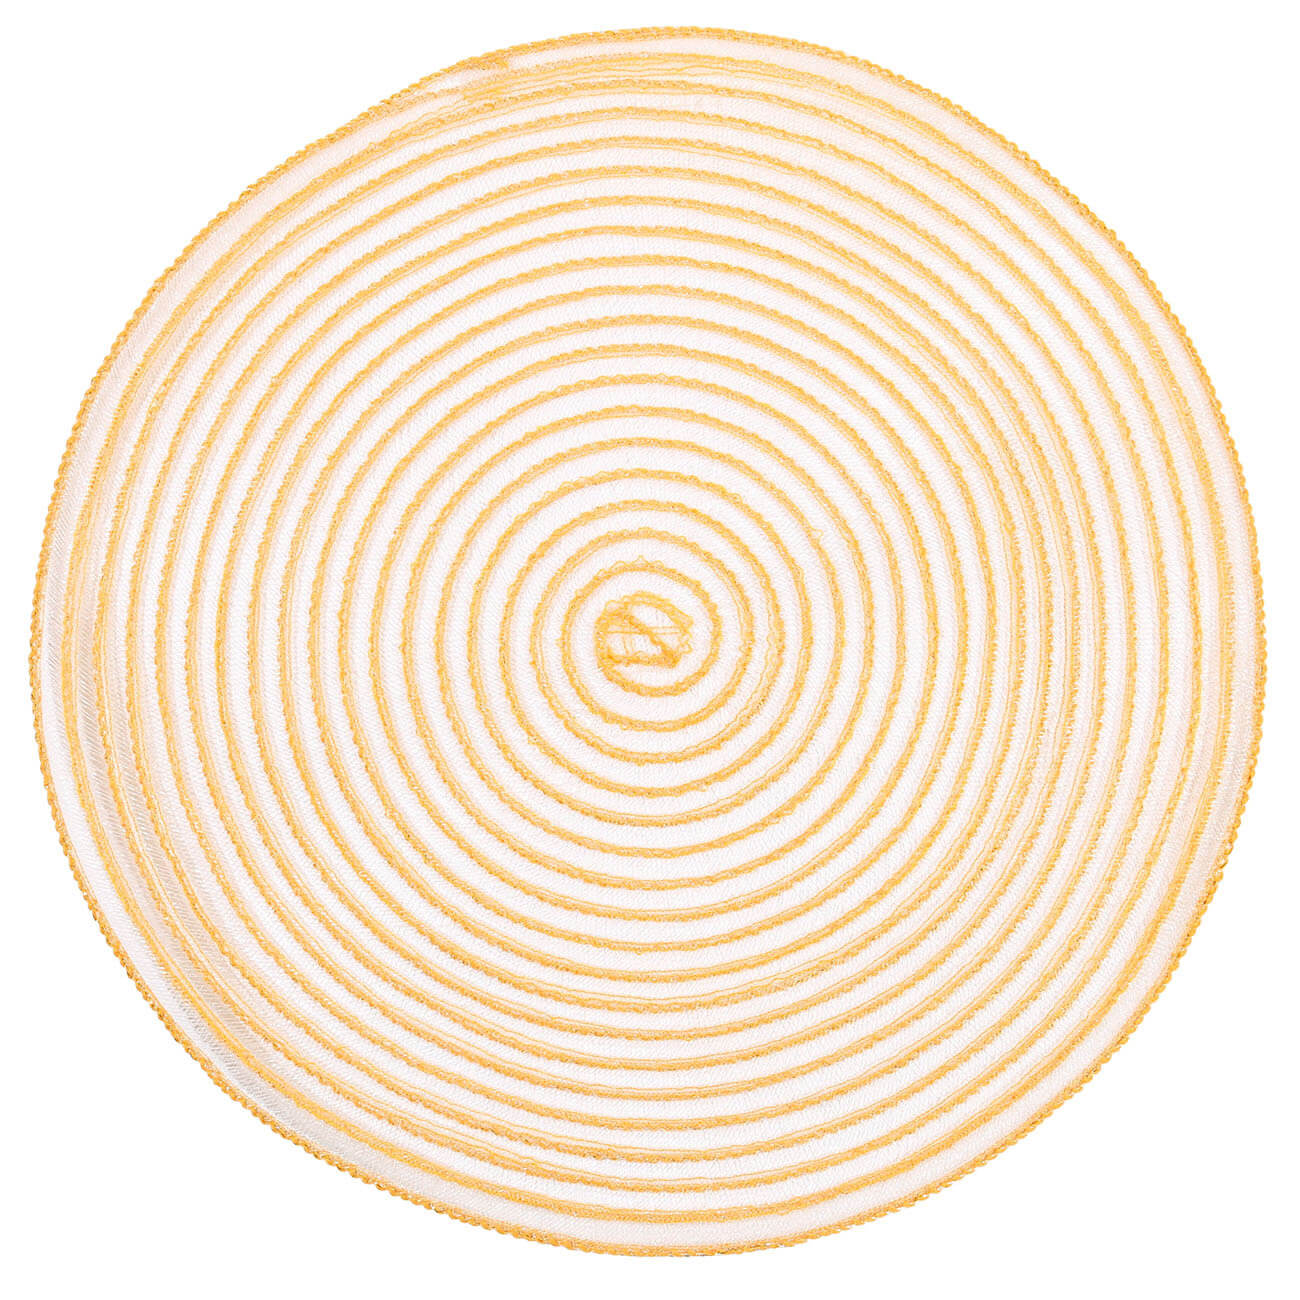 Салфетка под приборы, 38 см, полипропилен/ПЭТ, круглая, бежево-золотистая, Chintz изображение № 1